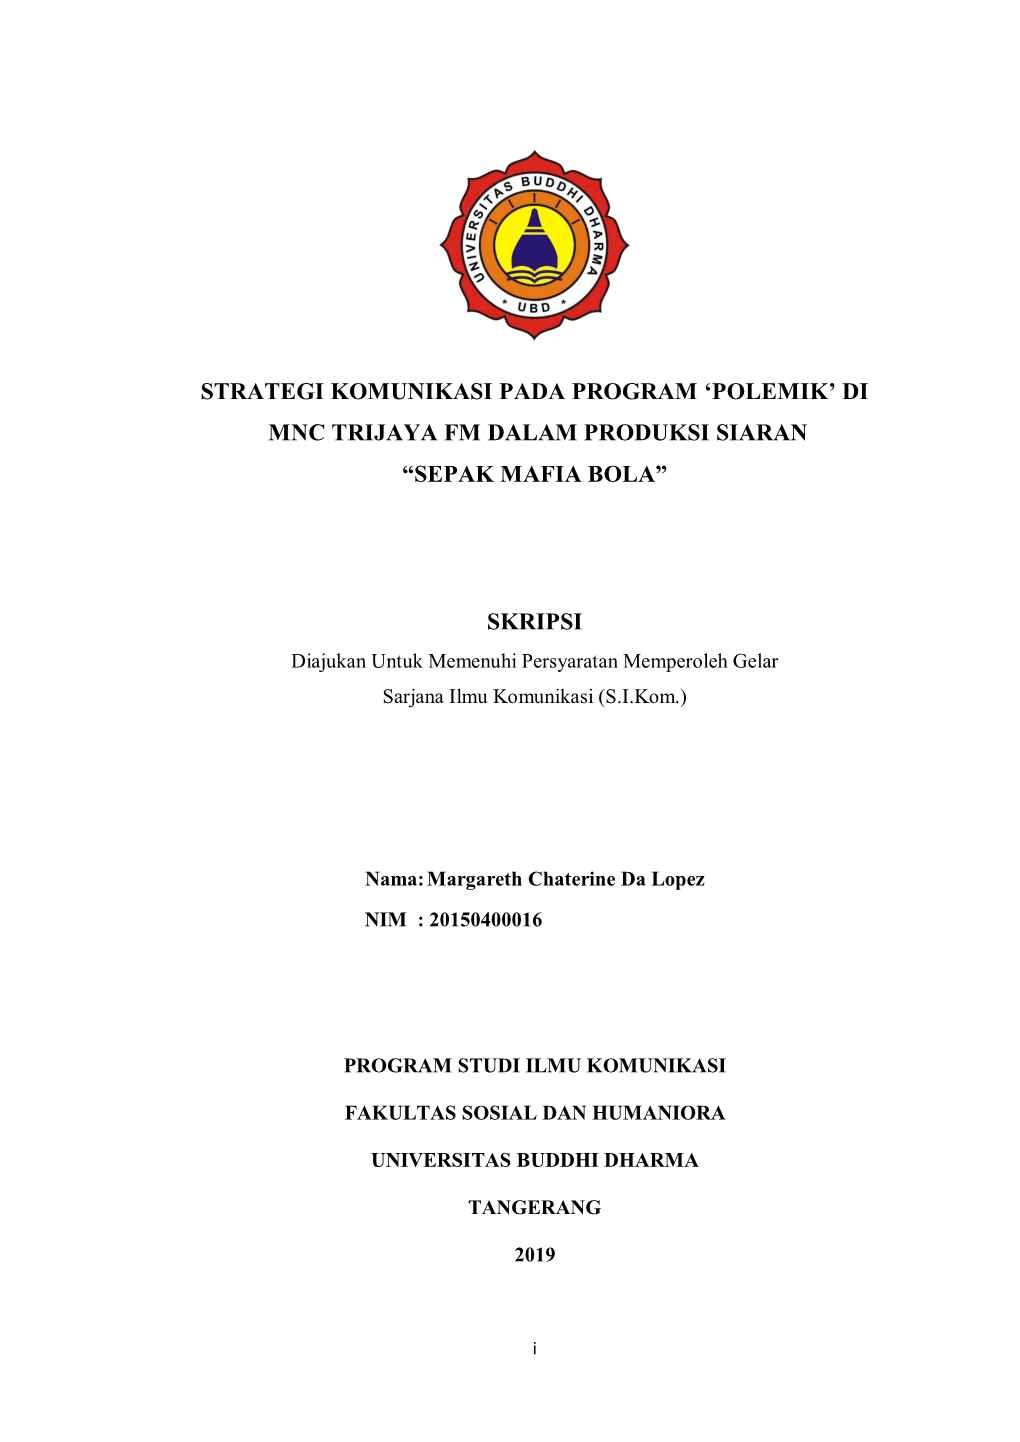 Strategi Komunikasi Pada Program 'Polemik' Di Mnc Trijaya Fm Dalam Produksi Siaran “Sepak Mafia Bola” Skripsi